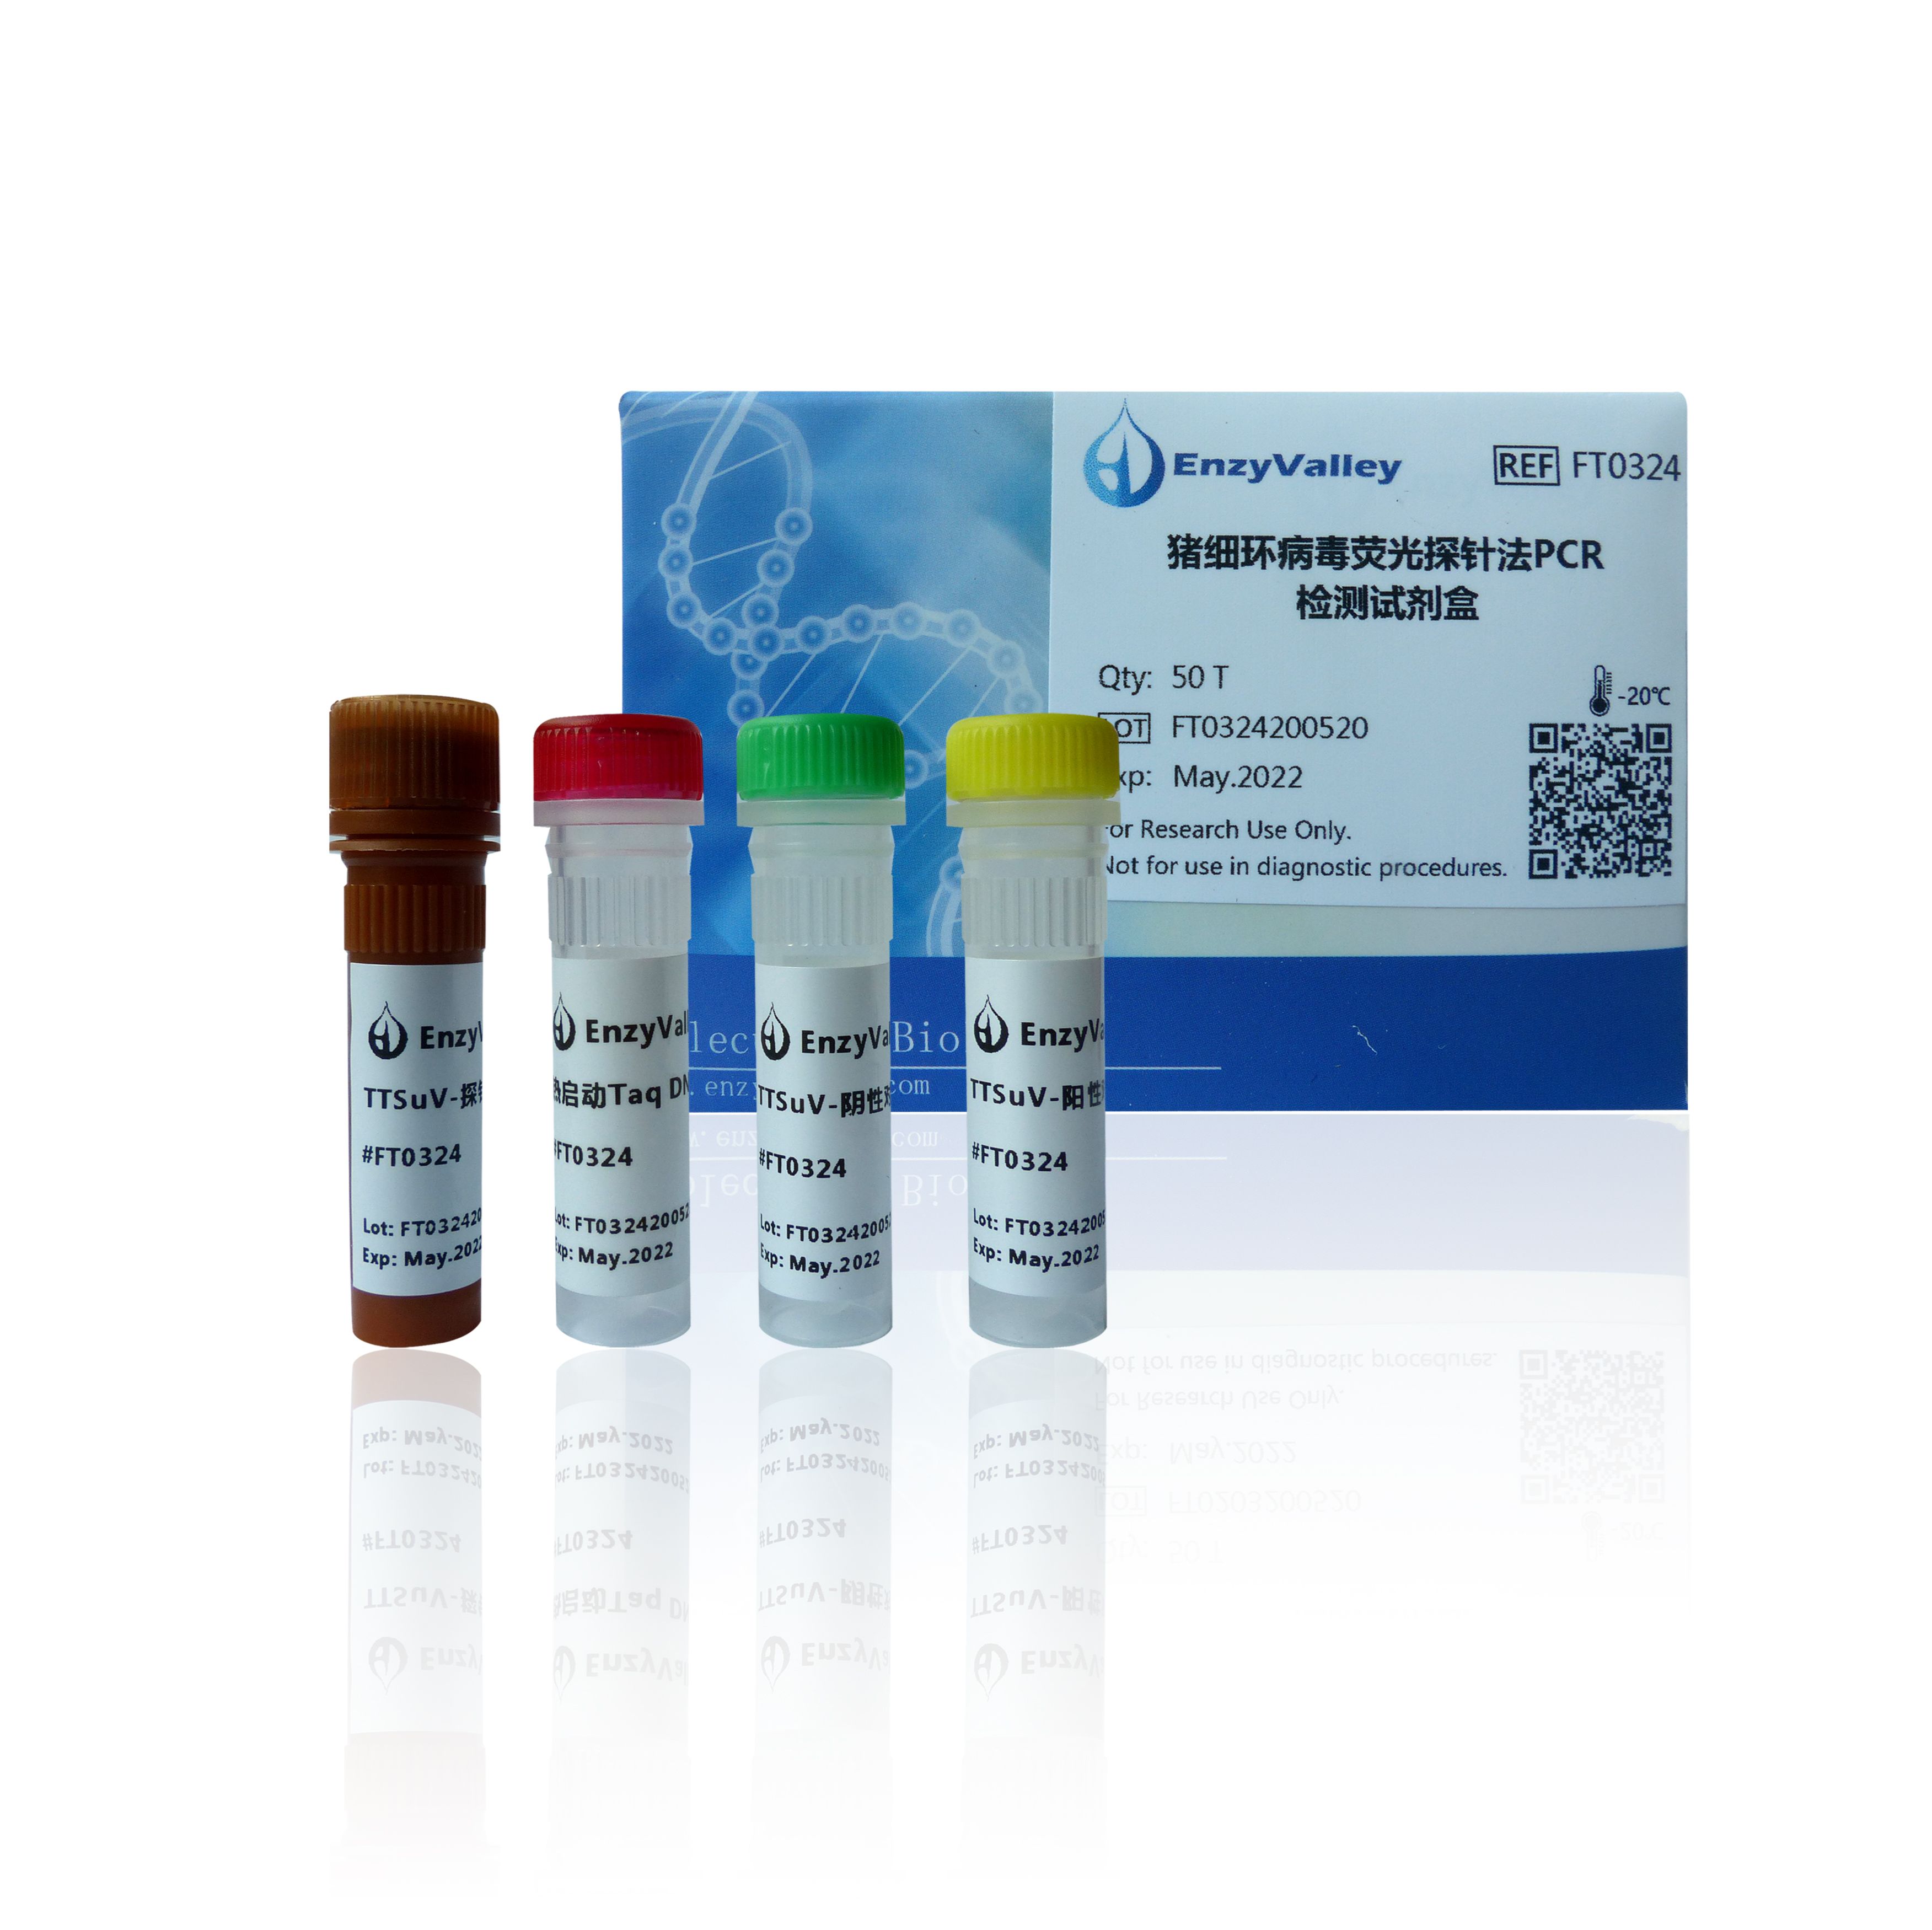  猪细环病毒荧光探针法PCR检测试剂盒  